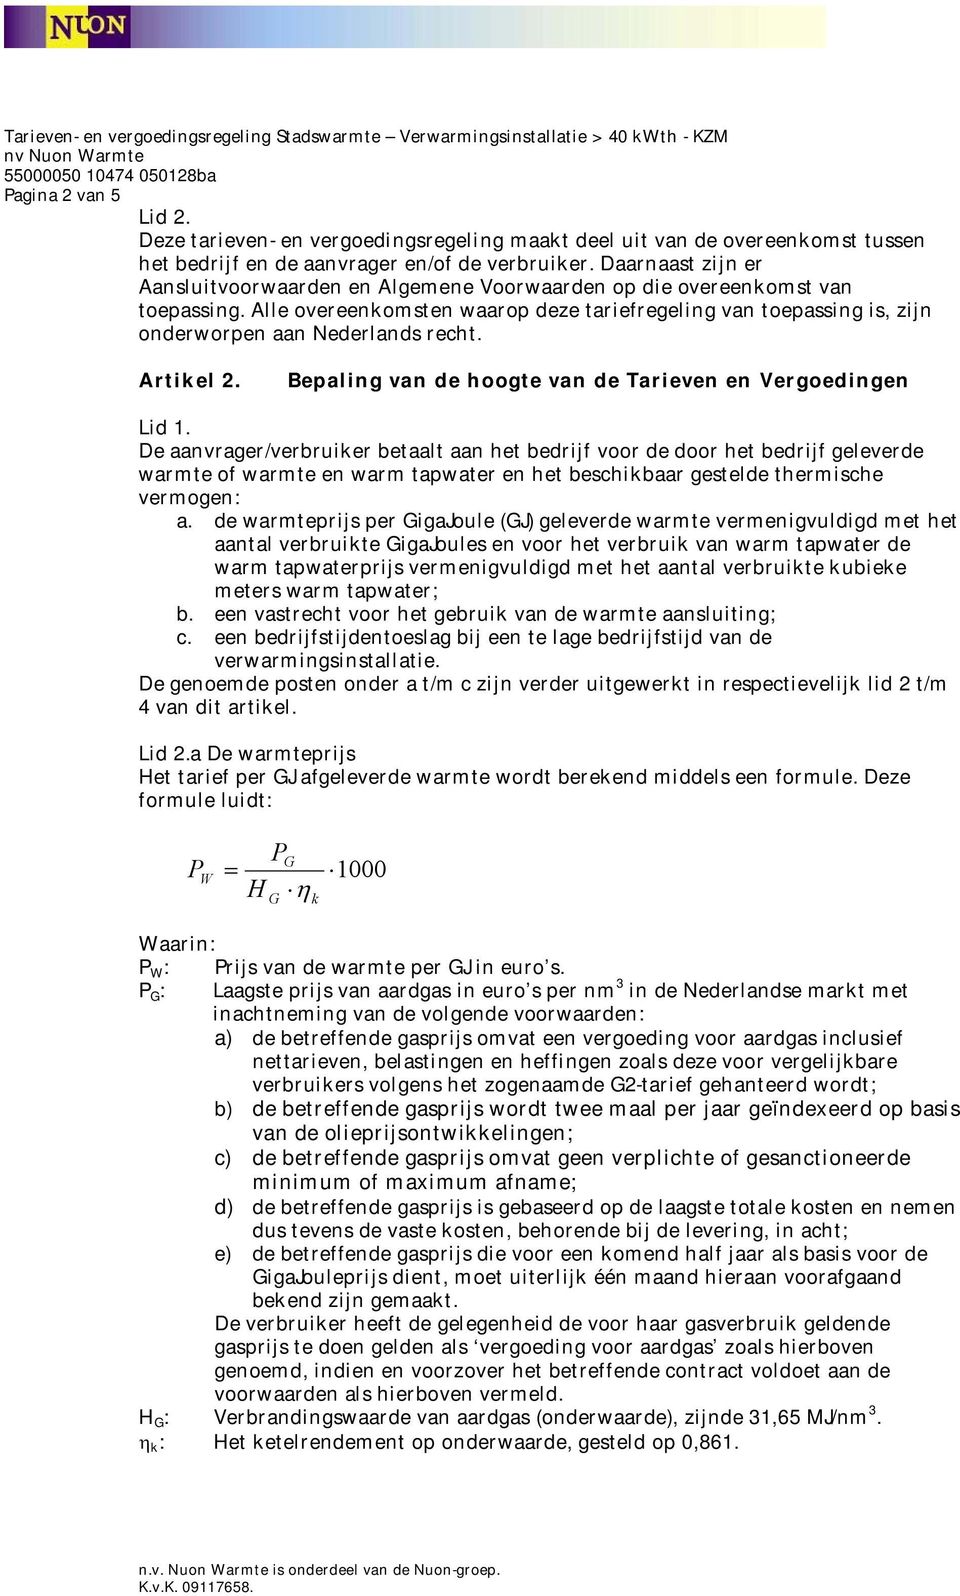 Alle overeenkomsten waarop deze tariefregeling van toepassing is, zijn onderworpen aan Nederlands recht. Artikel 2.